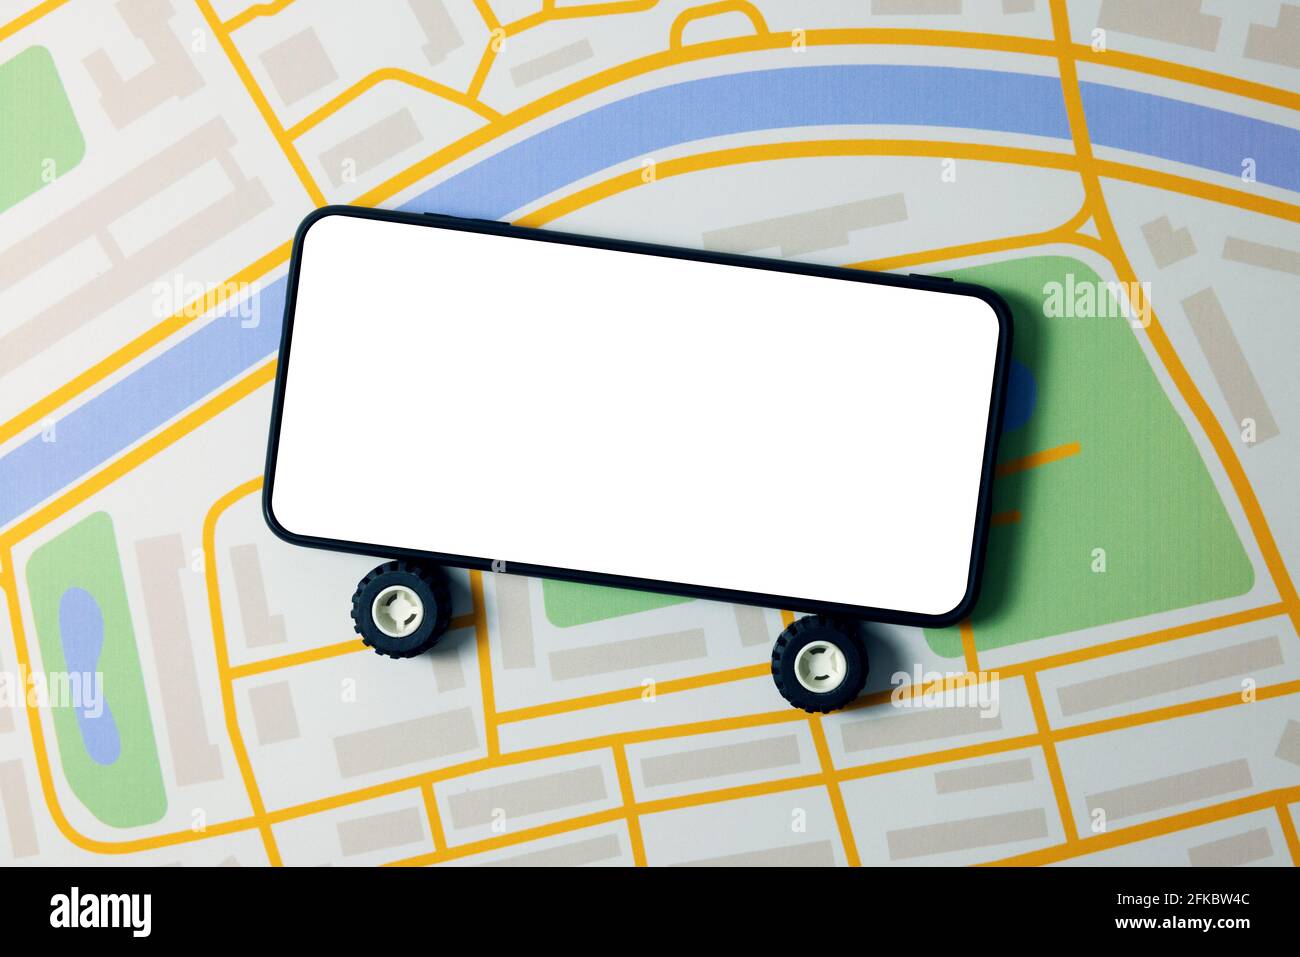 app mobile per il servizio di car sharing, noleggio auto e taxi - telefono con ruote e schermo vuoto sulla mappa della città Foto Stock